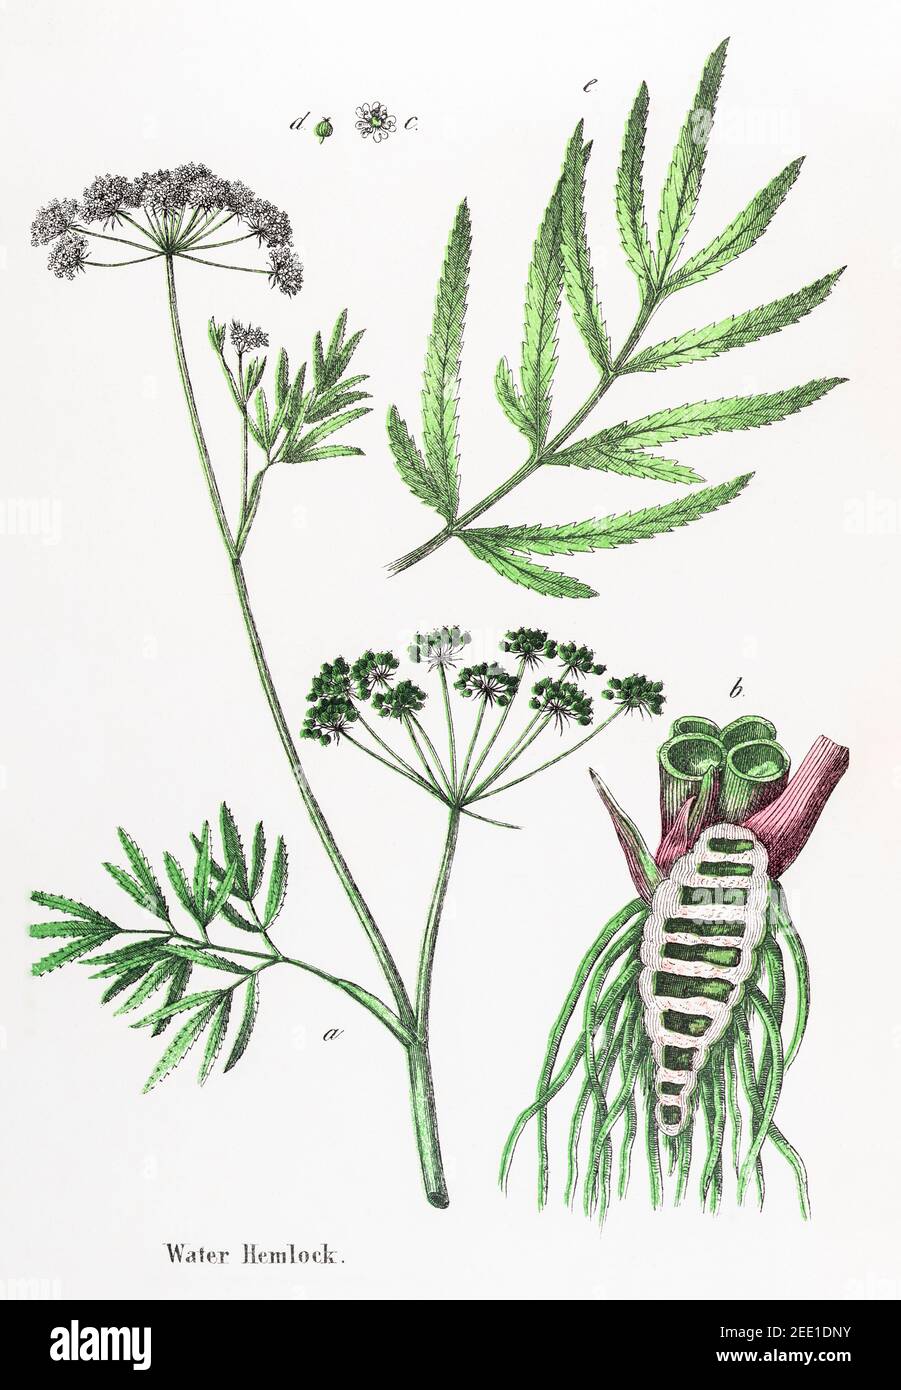 Restaurado digitalmente el siglo XIX Ilustración botánica victoriana de Hemlock de agua venenosa, Cowbane / Cicuta virosa. Consulte las notas para obtener información sobre la fuente. Foto de stock